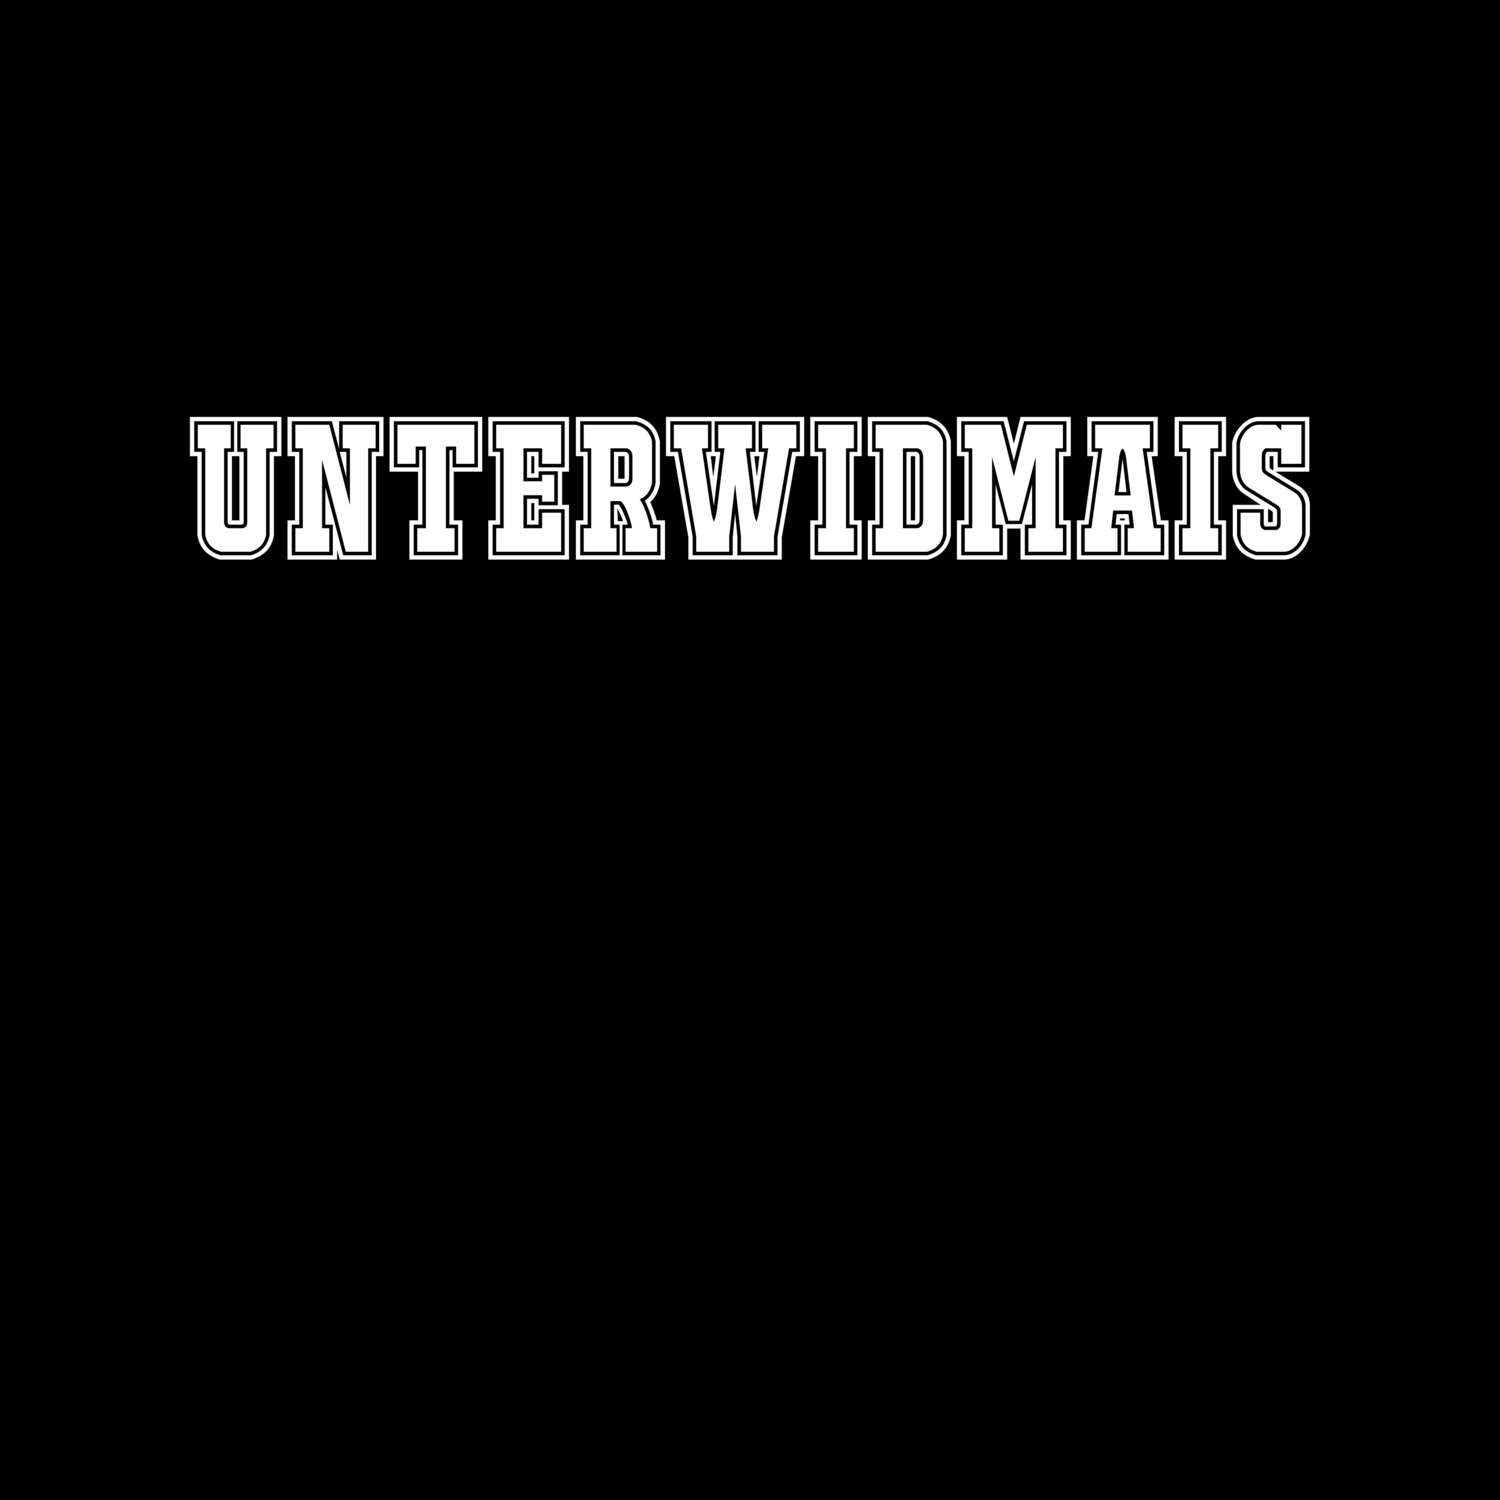 Unterwidmais T-Shirt »Classic«